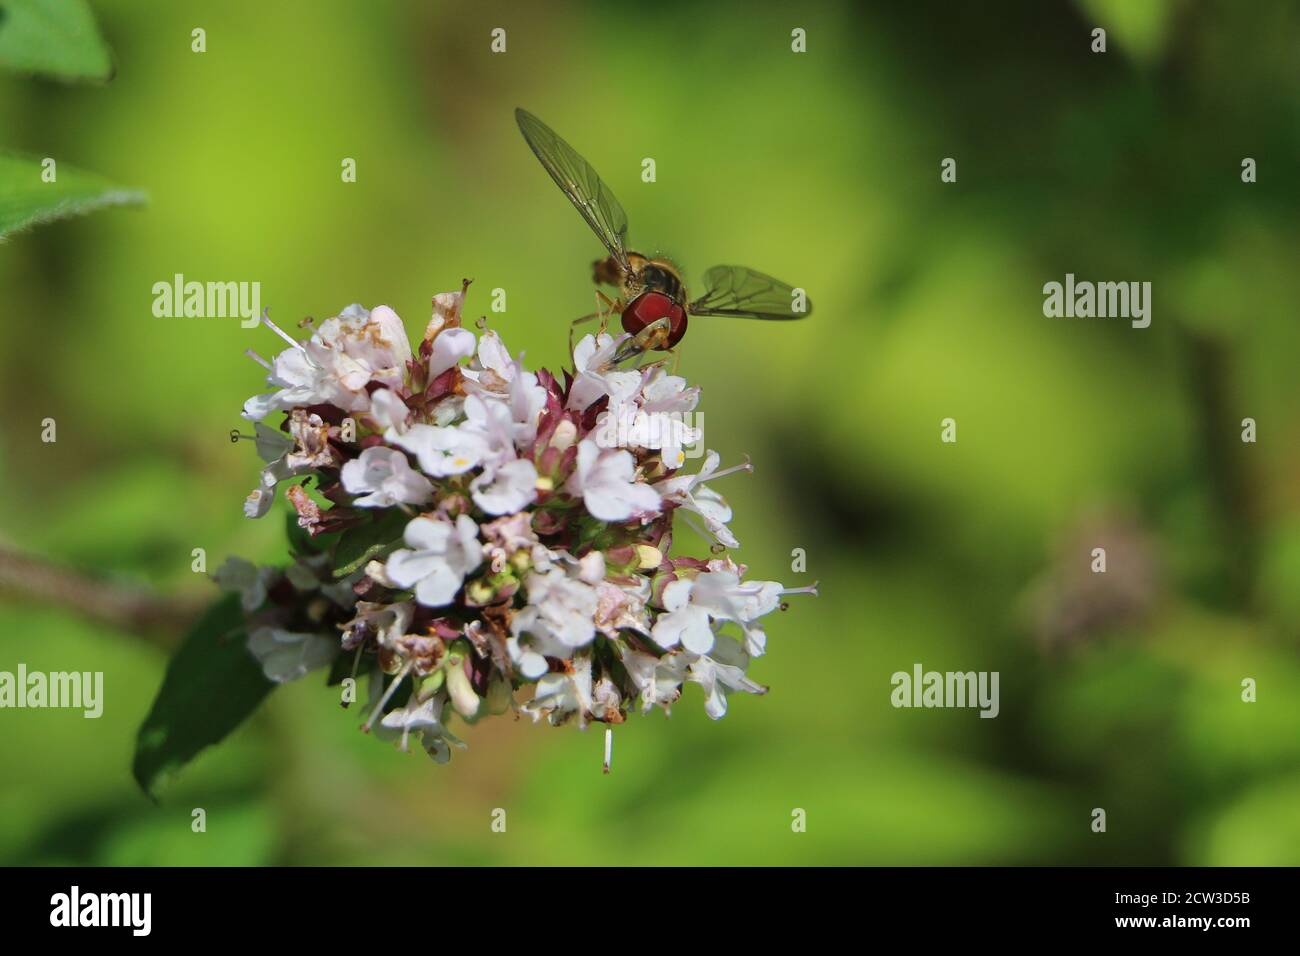 Orangefarbener und schwarz gestreifter Rüde Marmalade Hoverfly, Episyrphus balteatus, auf weißen Blüten, Nahaufnahme, auf grünem diffusem Hintergrund Stockfoto